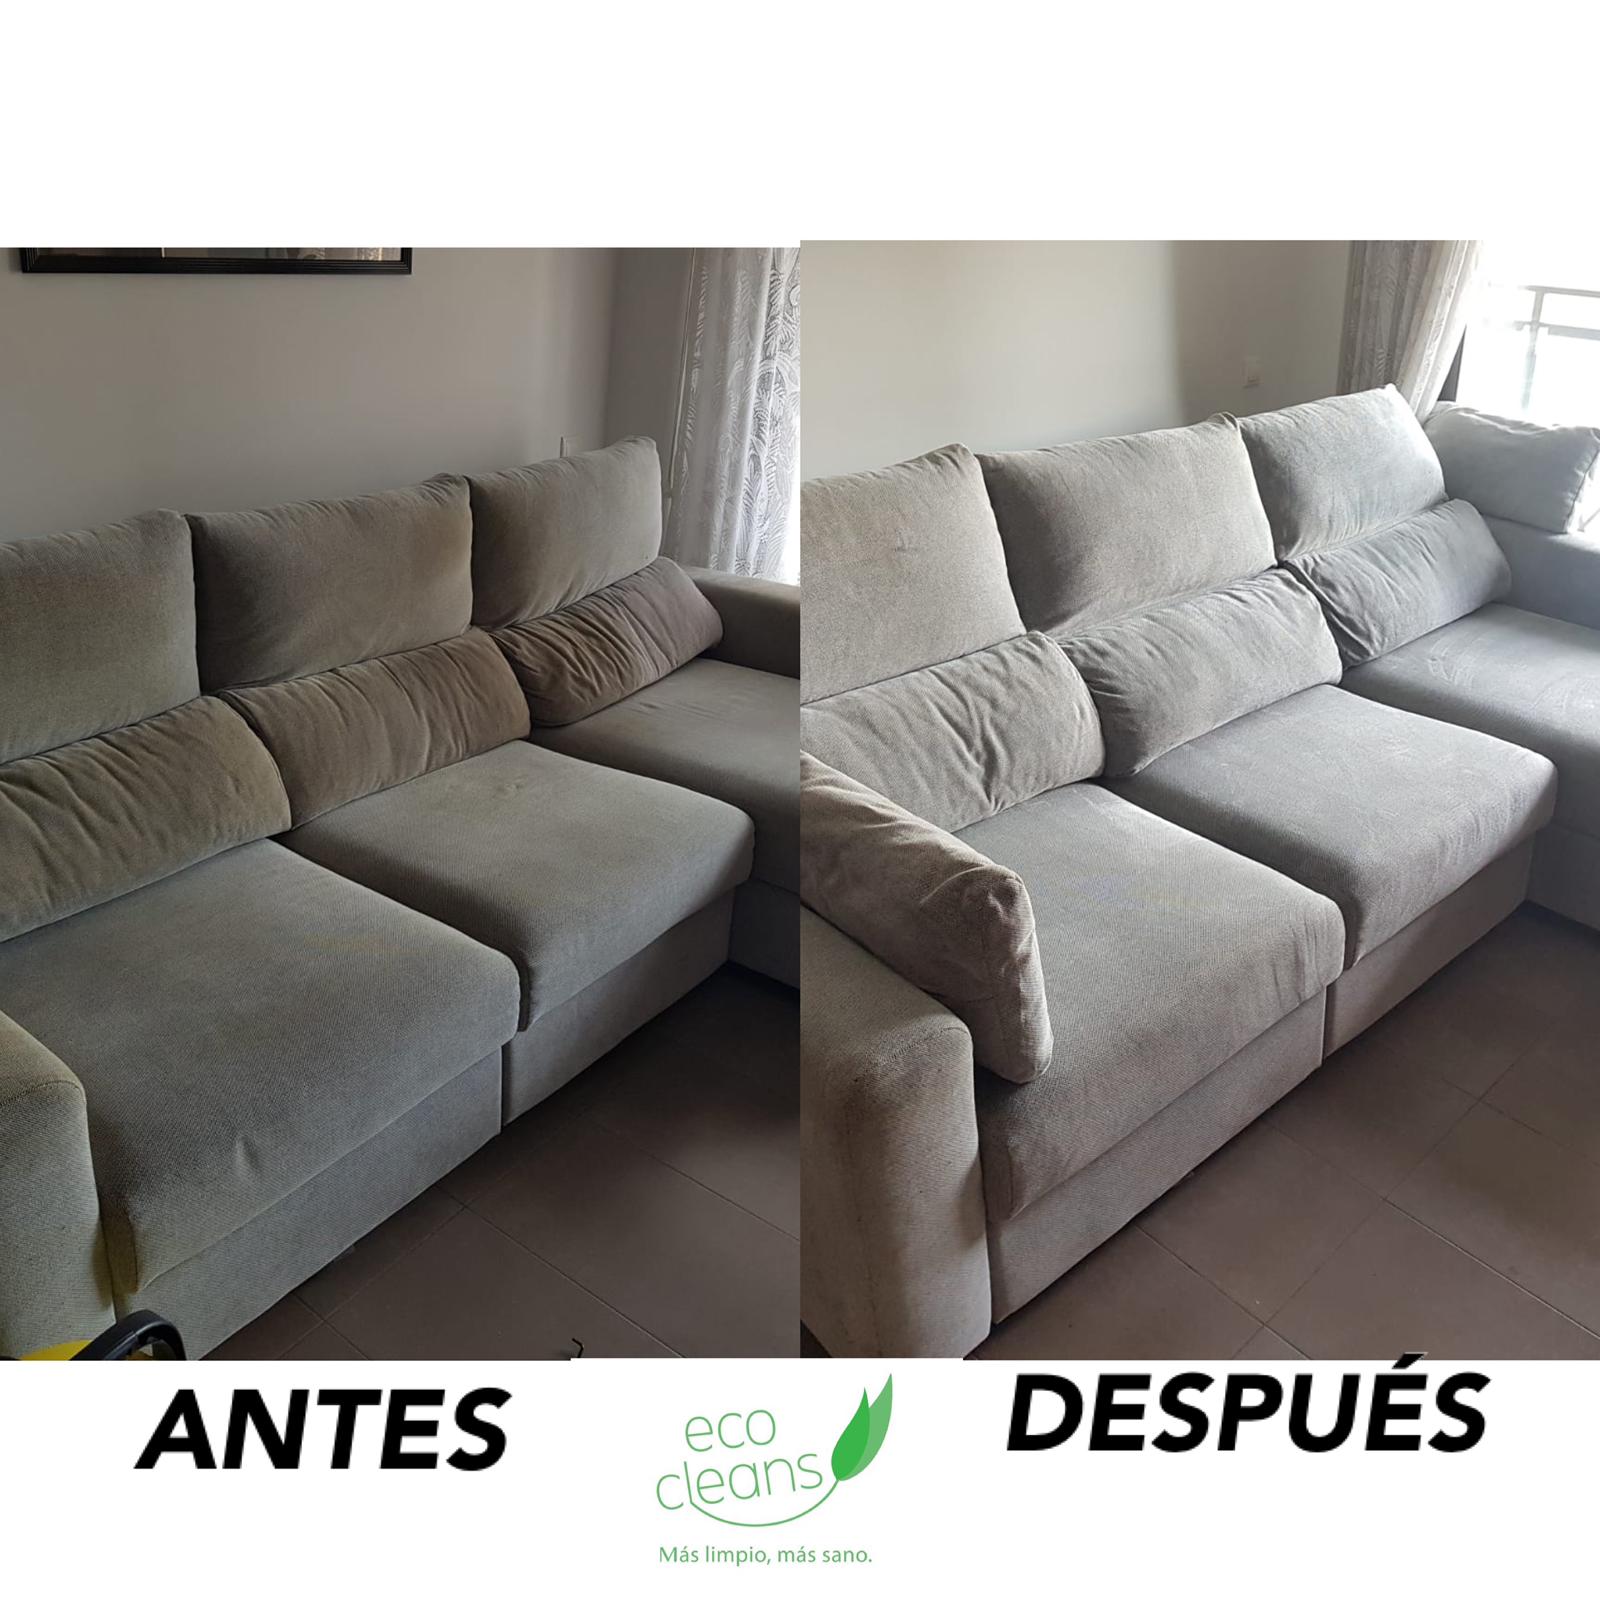 Abans i després del servei de la neteja d'Ecocleans Sabadell. FOTO: Cedida